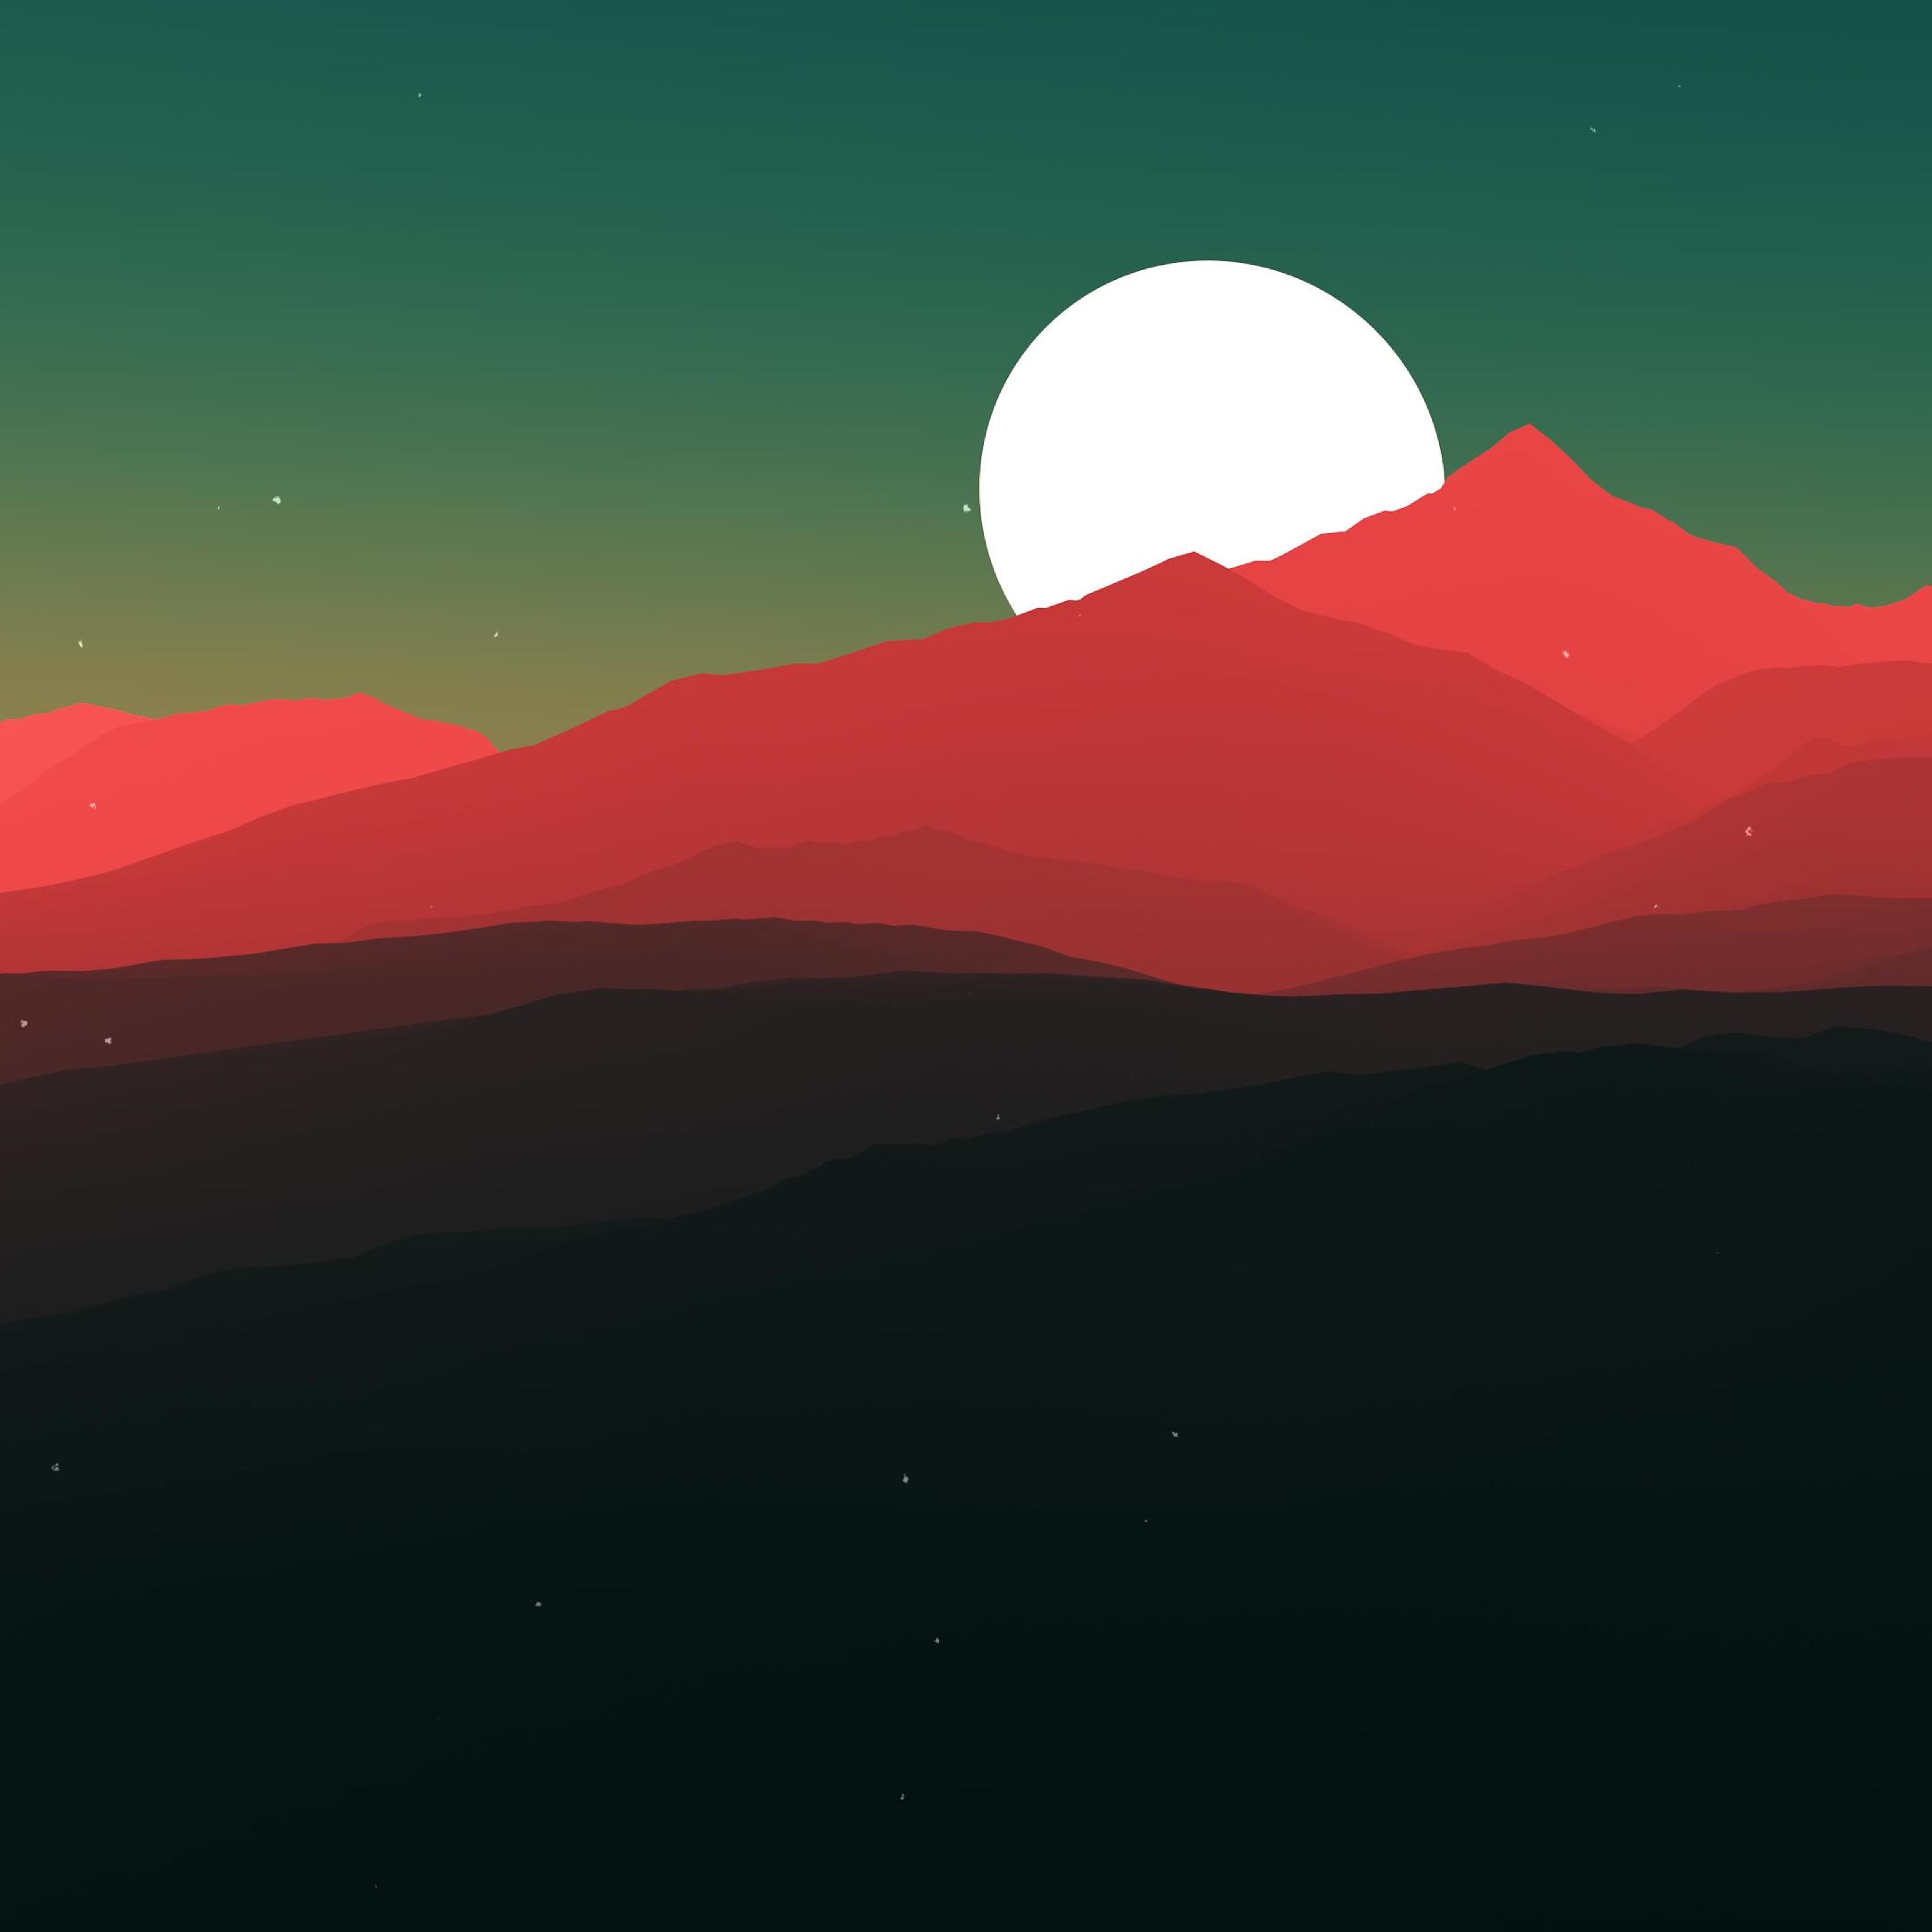 papel pintado minimalista del ipad,cielo,rojo,montaña,colina,luna llena